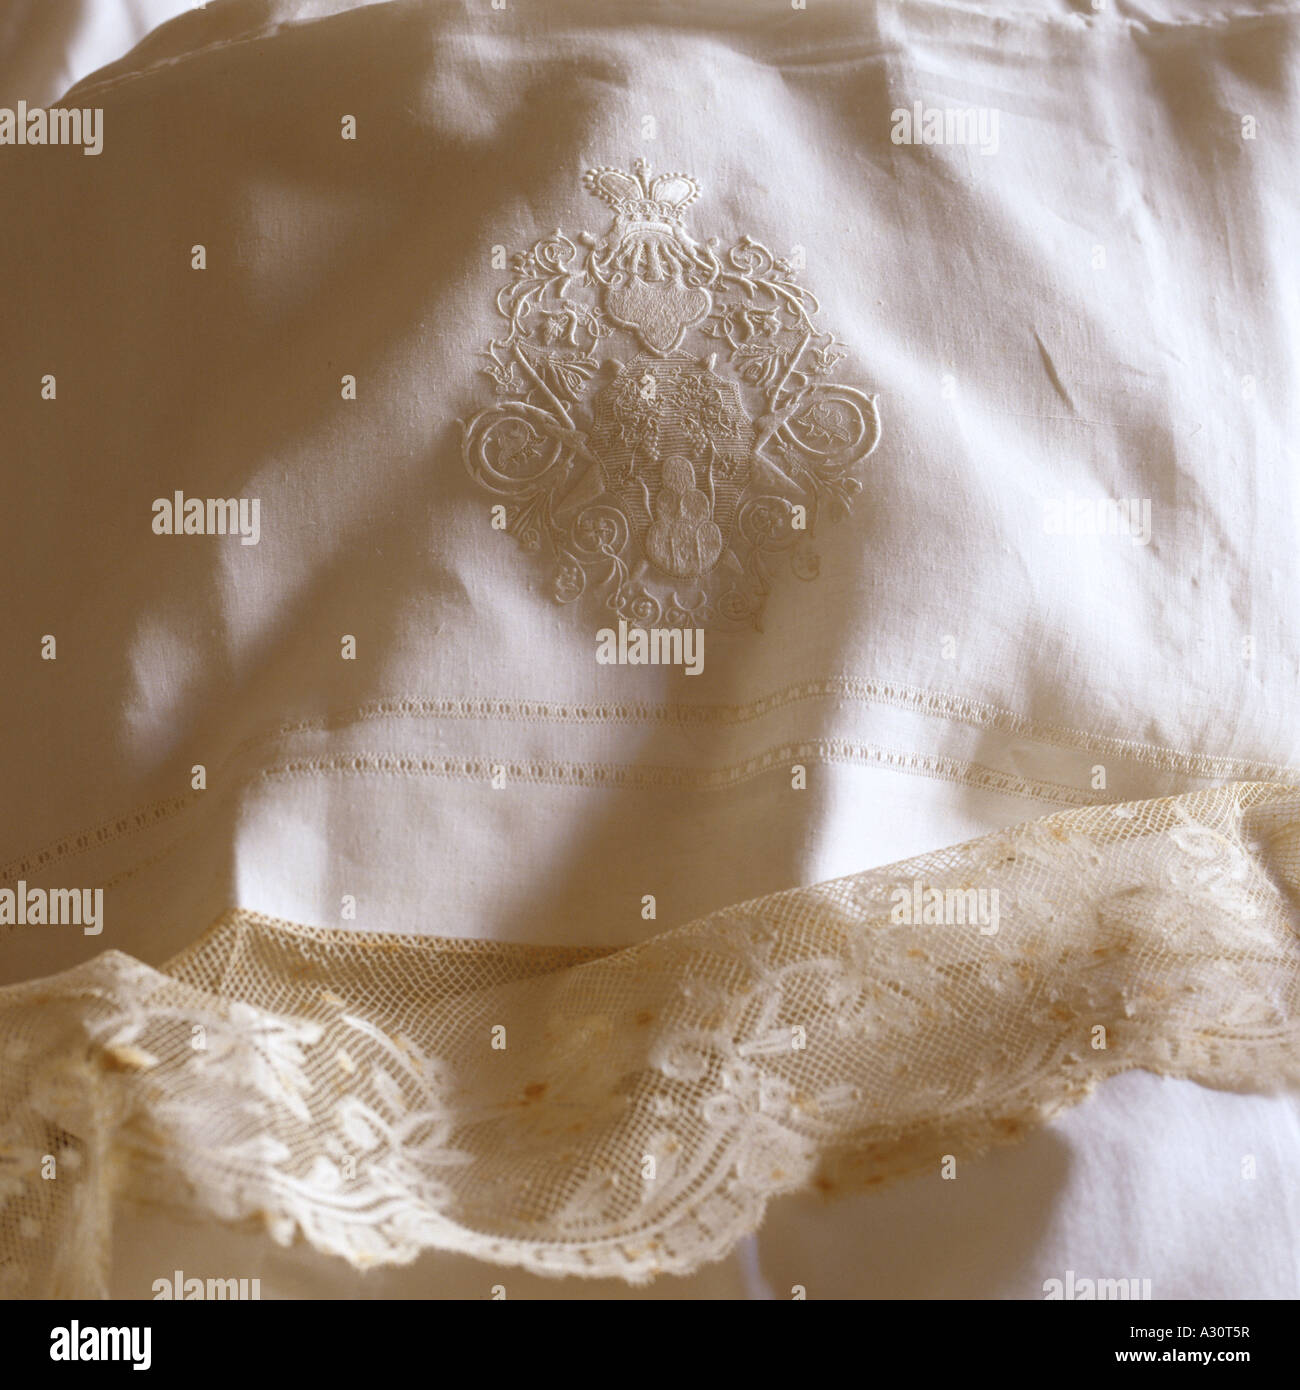 El bordado en un almohadón de lino antiguo Foto de stock